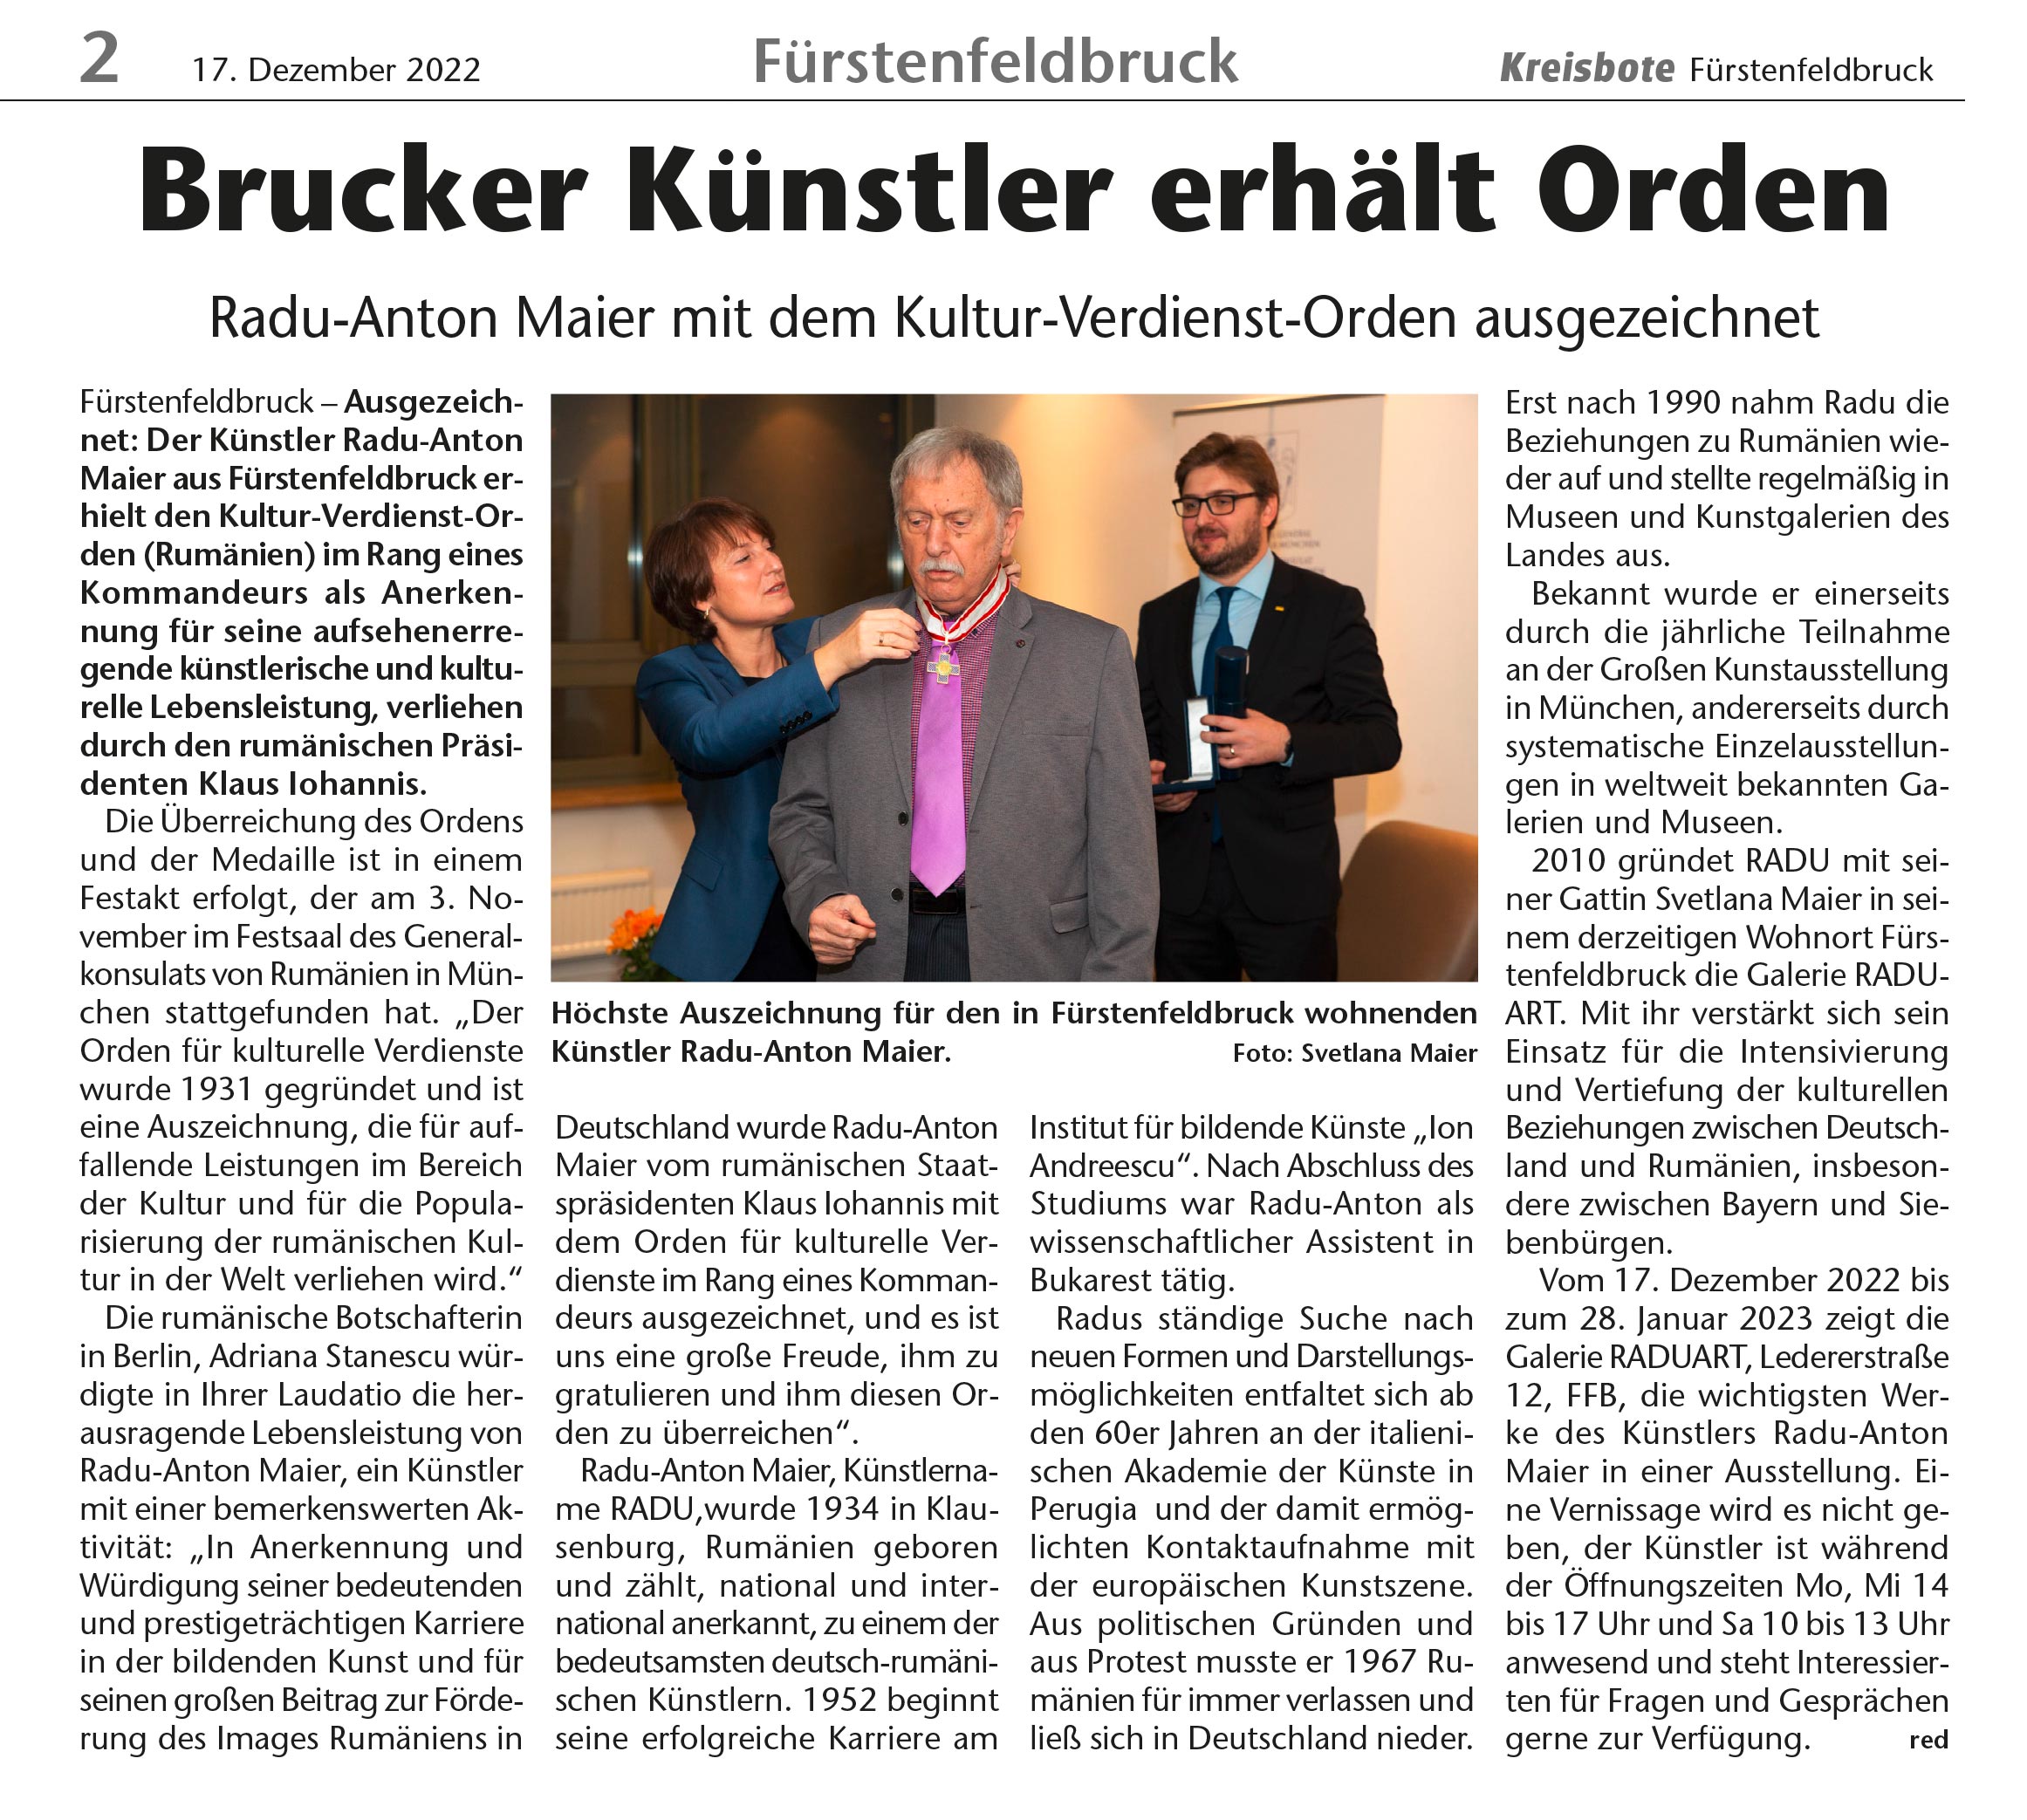 Kultur-Verdienst-Orden Brucker Künstler Radu-Anton Maier